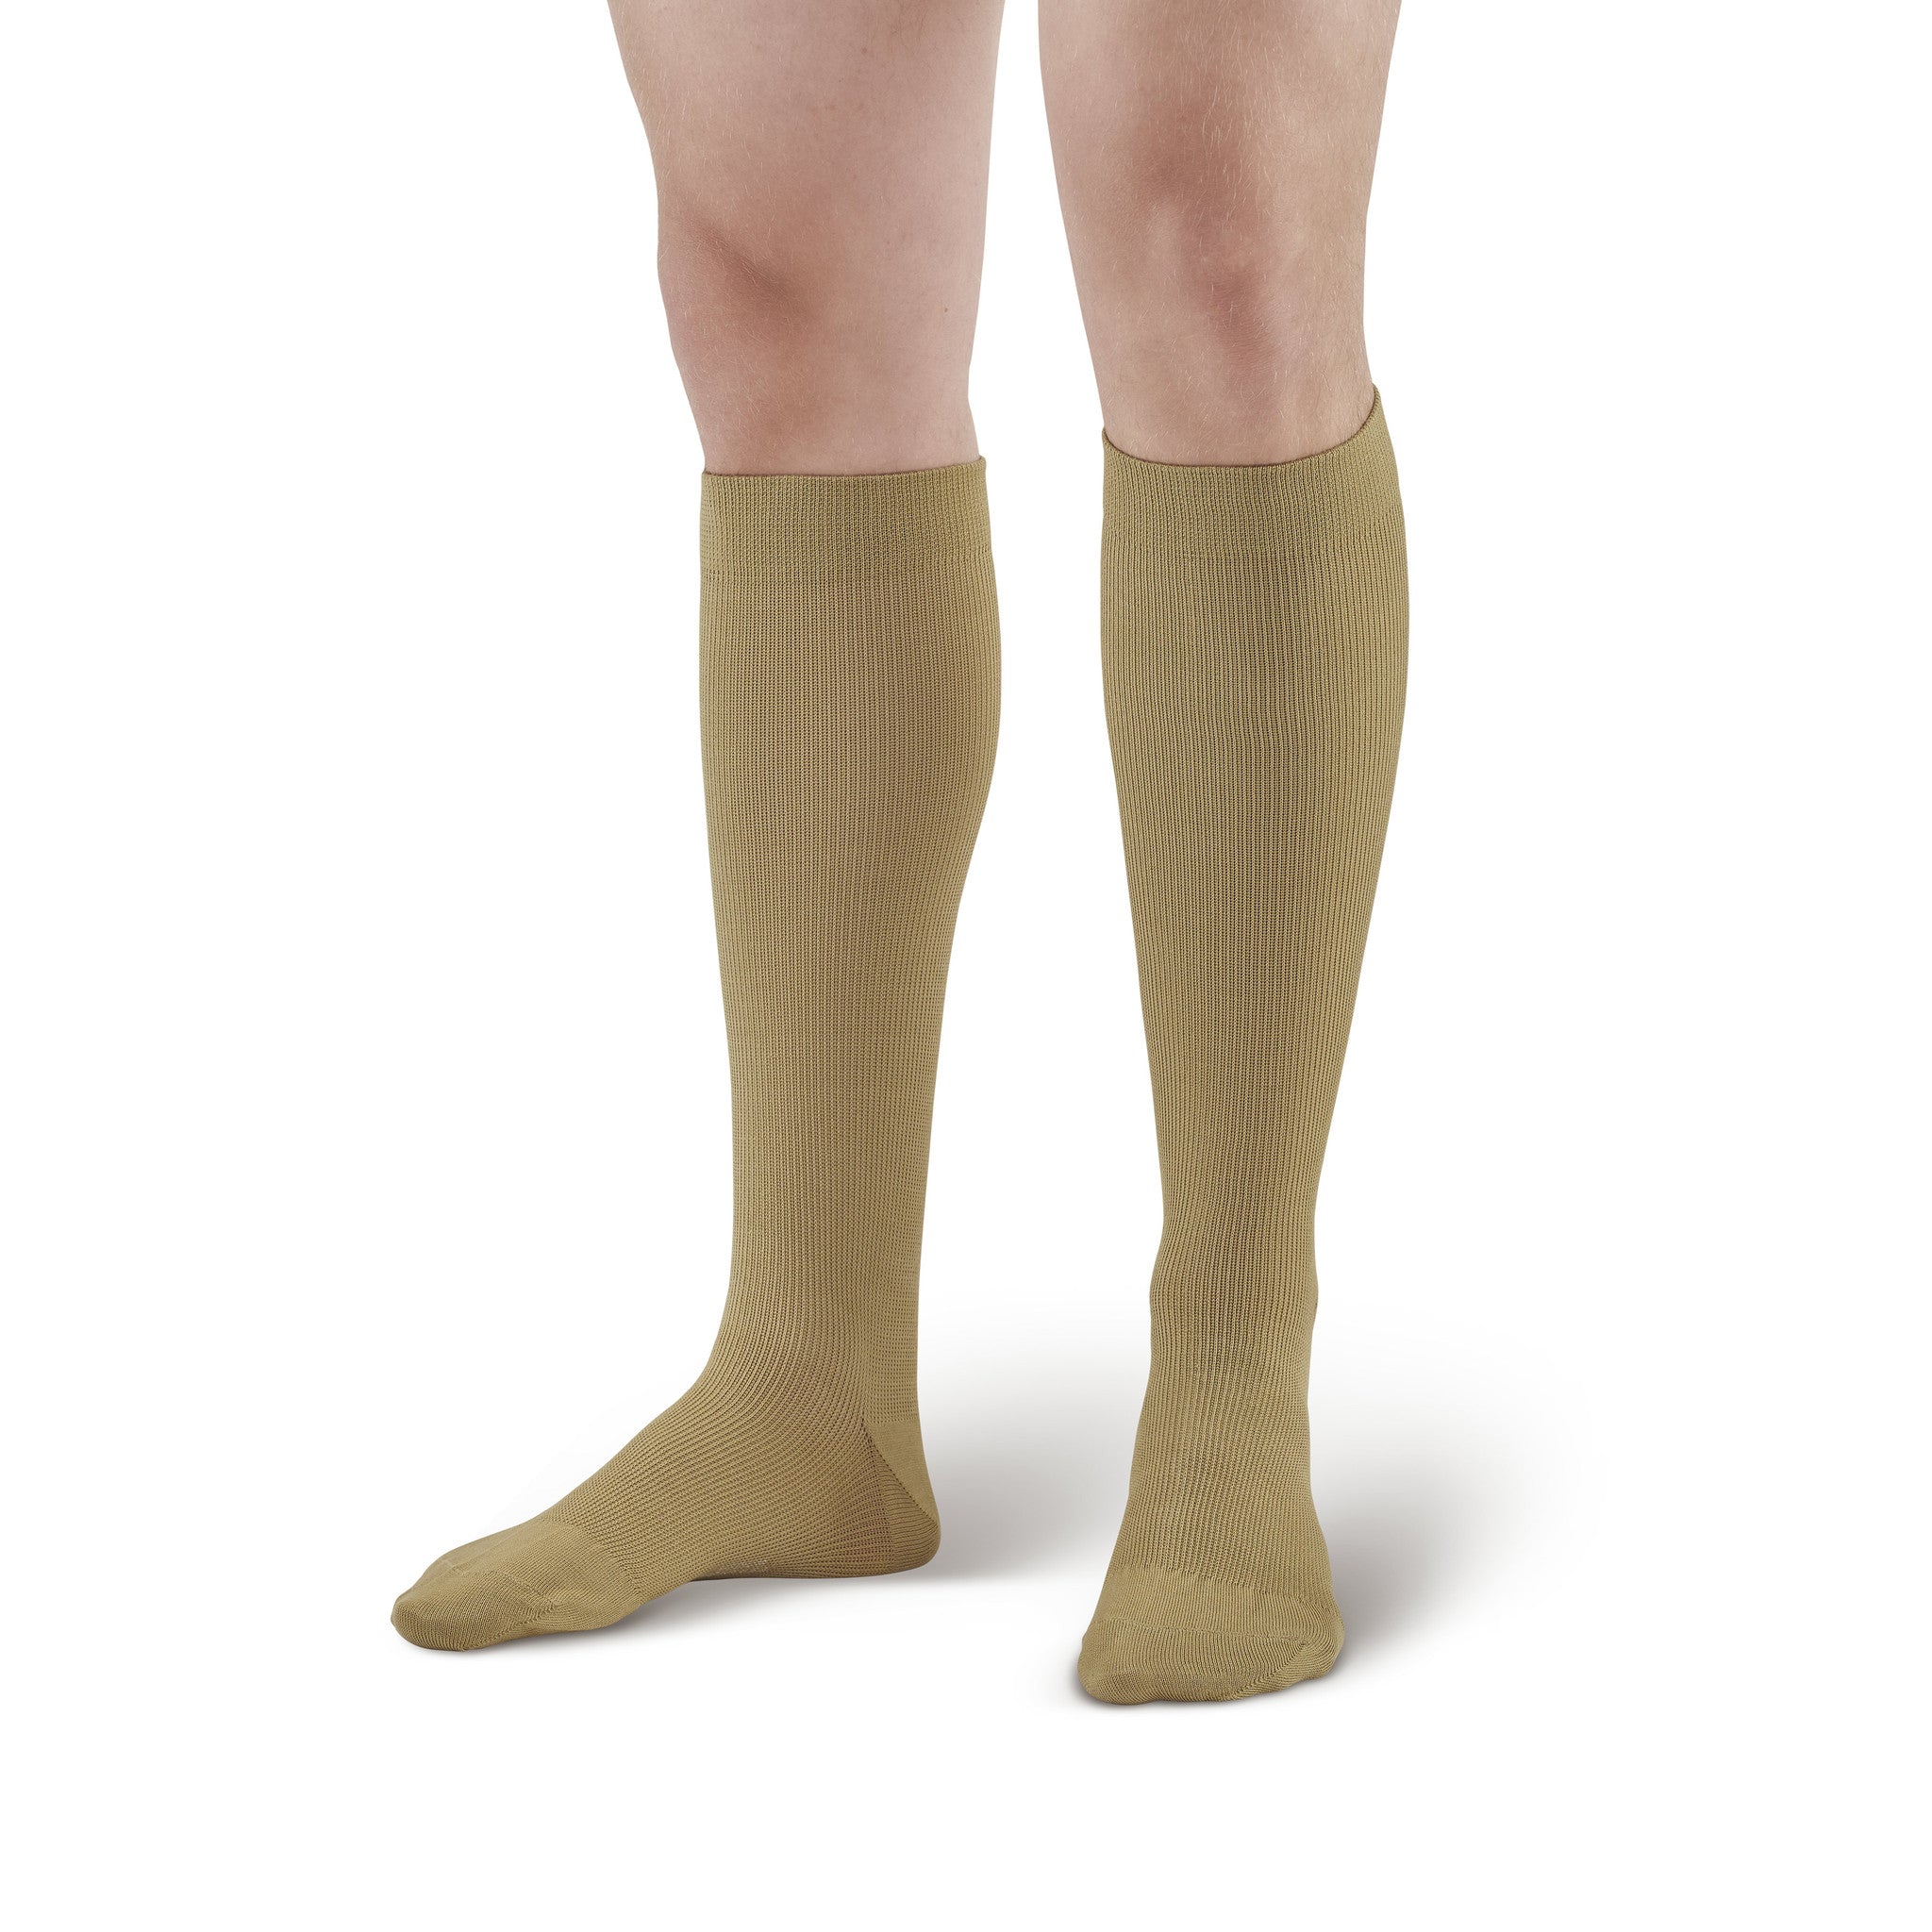 Cuff Curvy Calf Plus Size Compression Trouser Sock Reinforced Toe5214   Berkshire